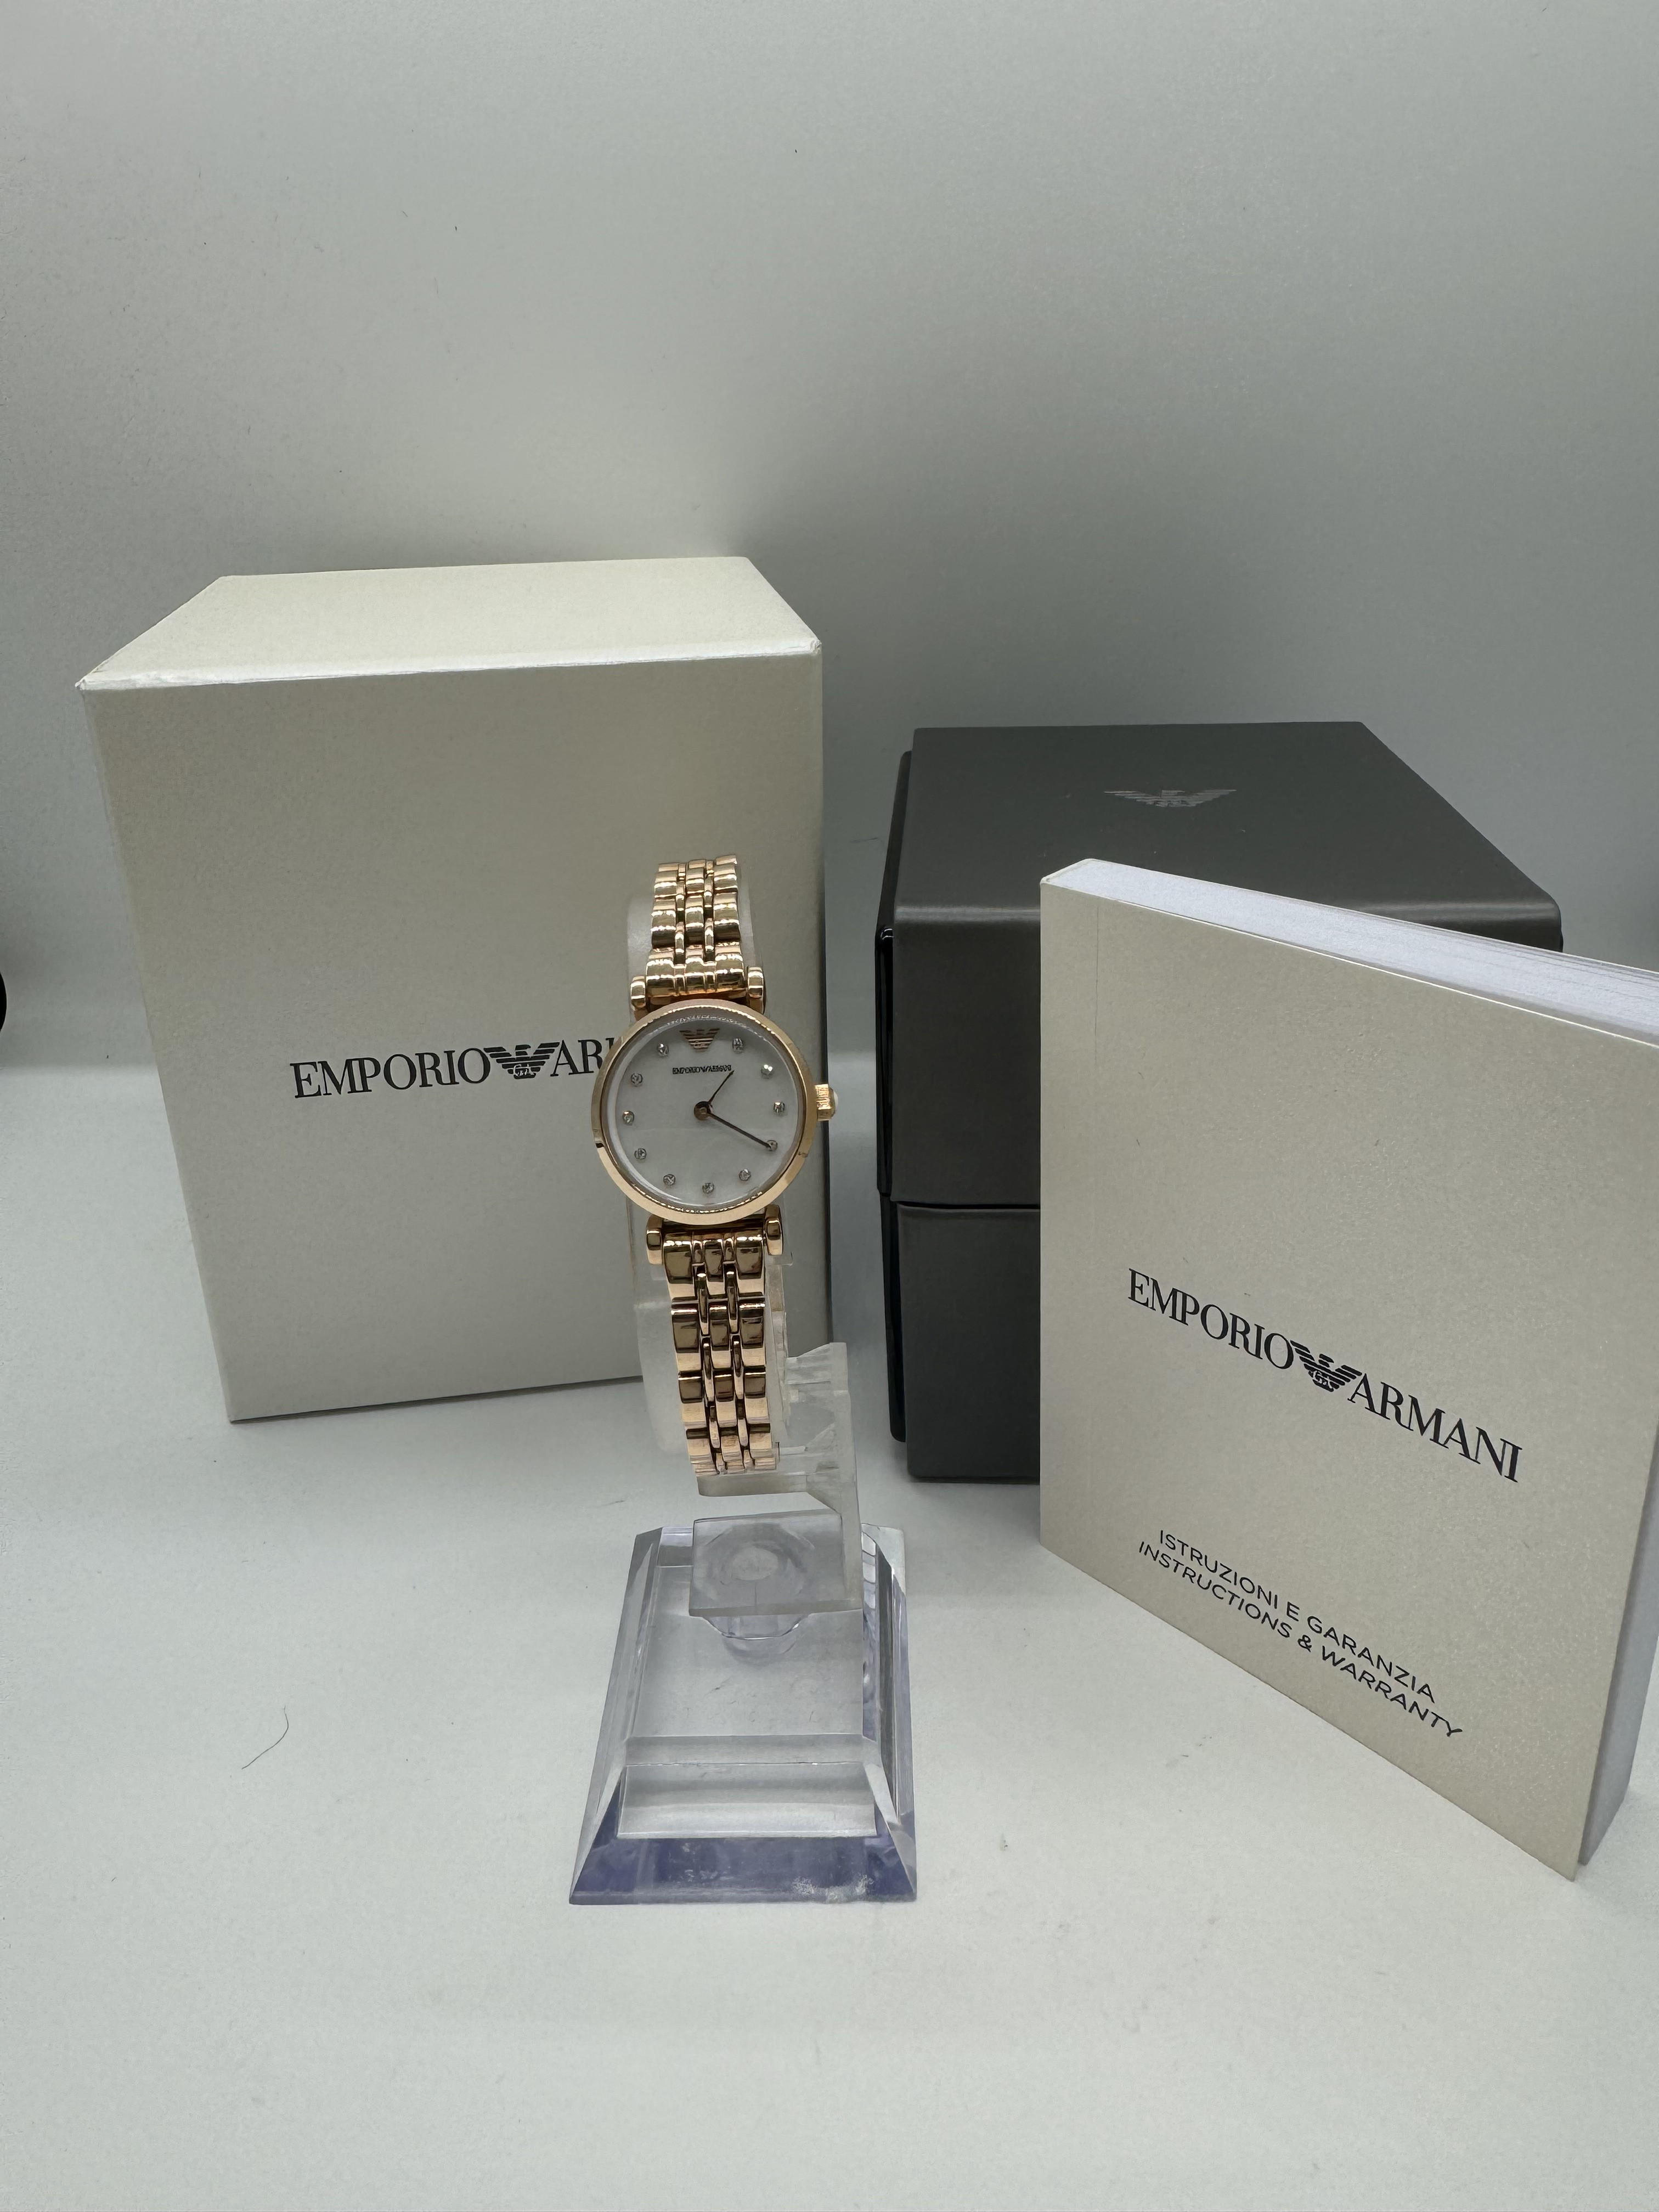 EMPORIO ARMANI エンポリオ アルマーニ腕時計お買取致しました✨ウェストヴィレッジ荏原町店♻️